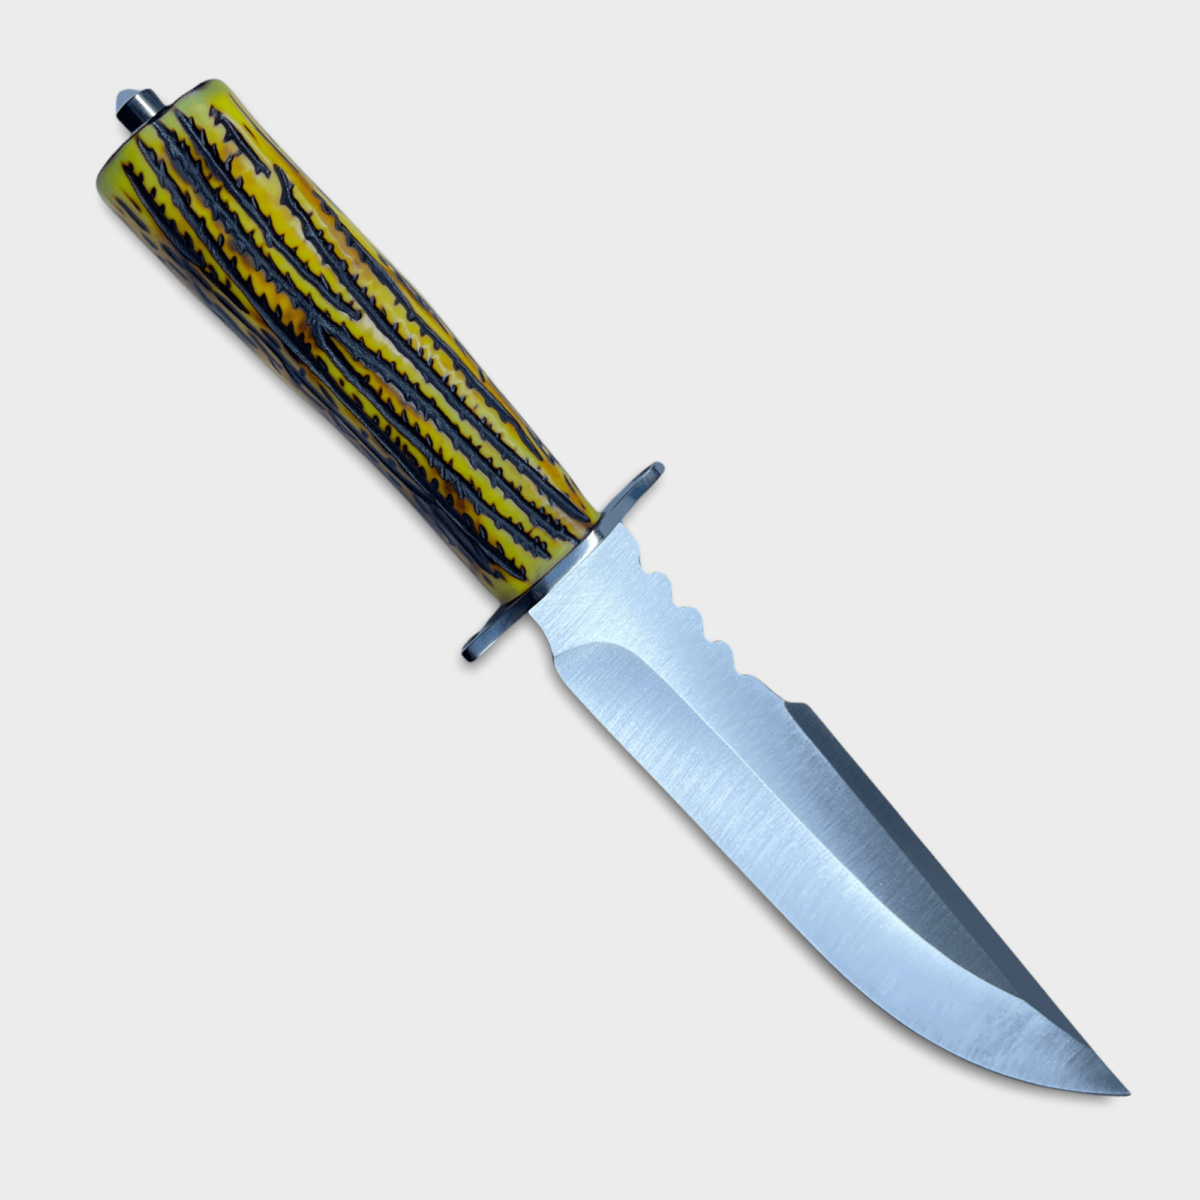 Lovecký nůž s pouzdrem s vlastním textem nebo motivem - imitace paroží, 42432